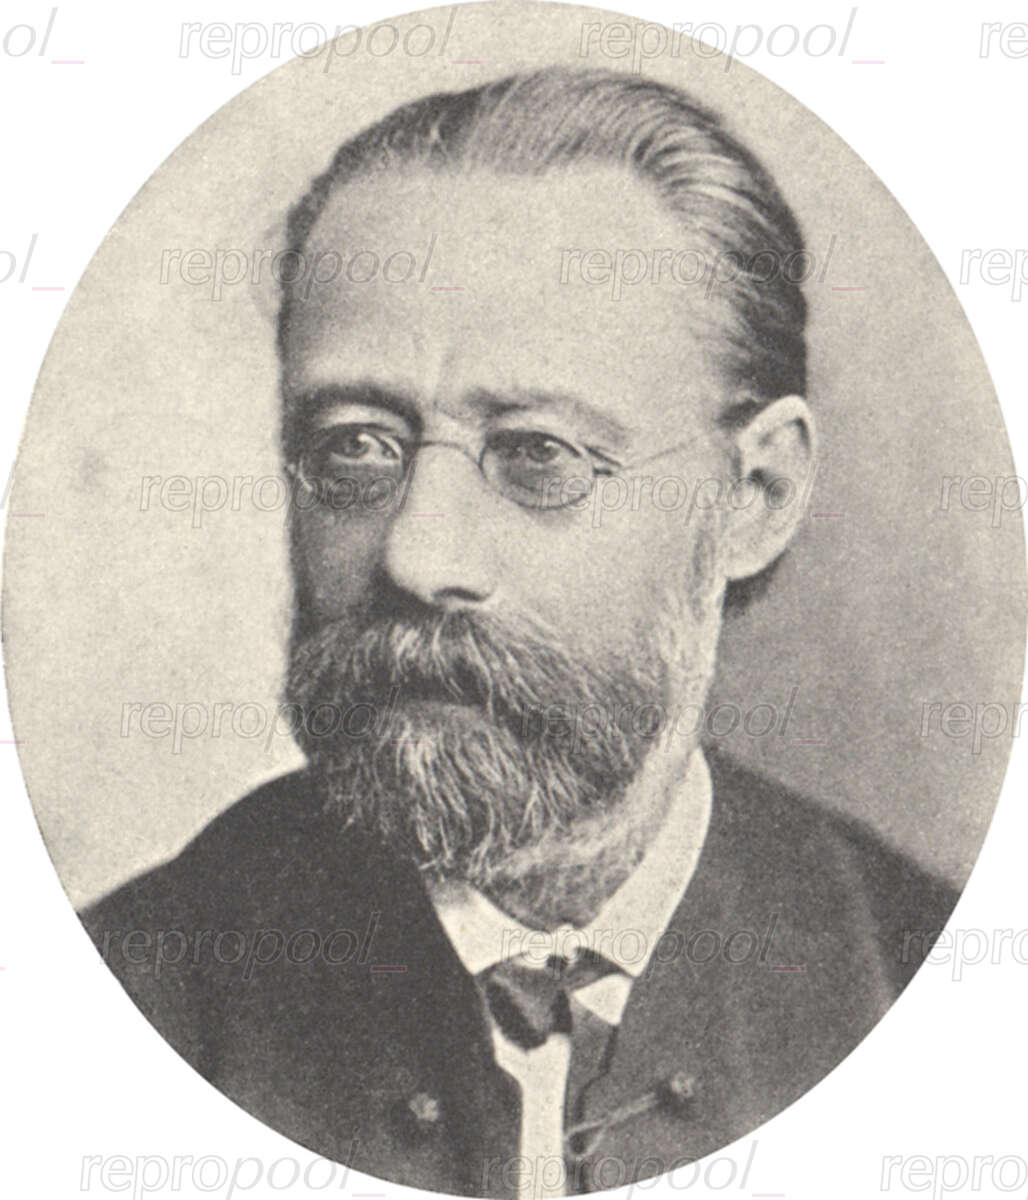 Bedřich Smetana; Fotografie von unbekannter Hand (um 1880)